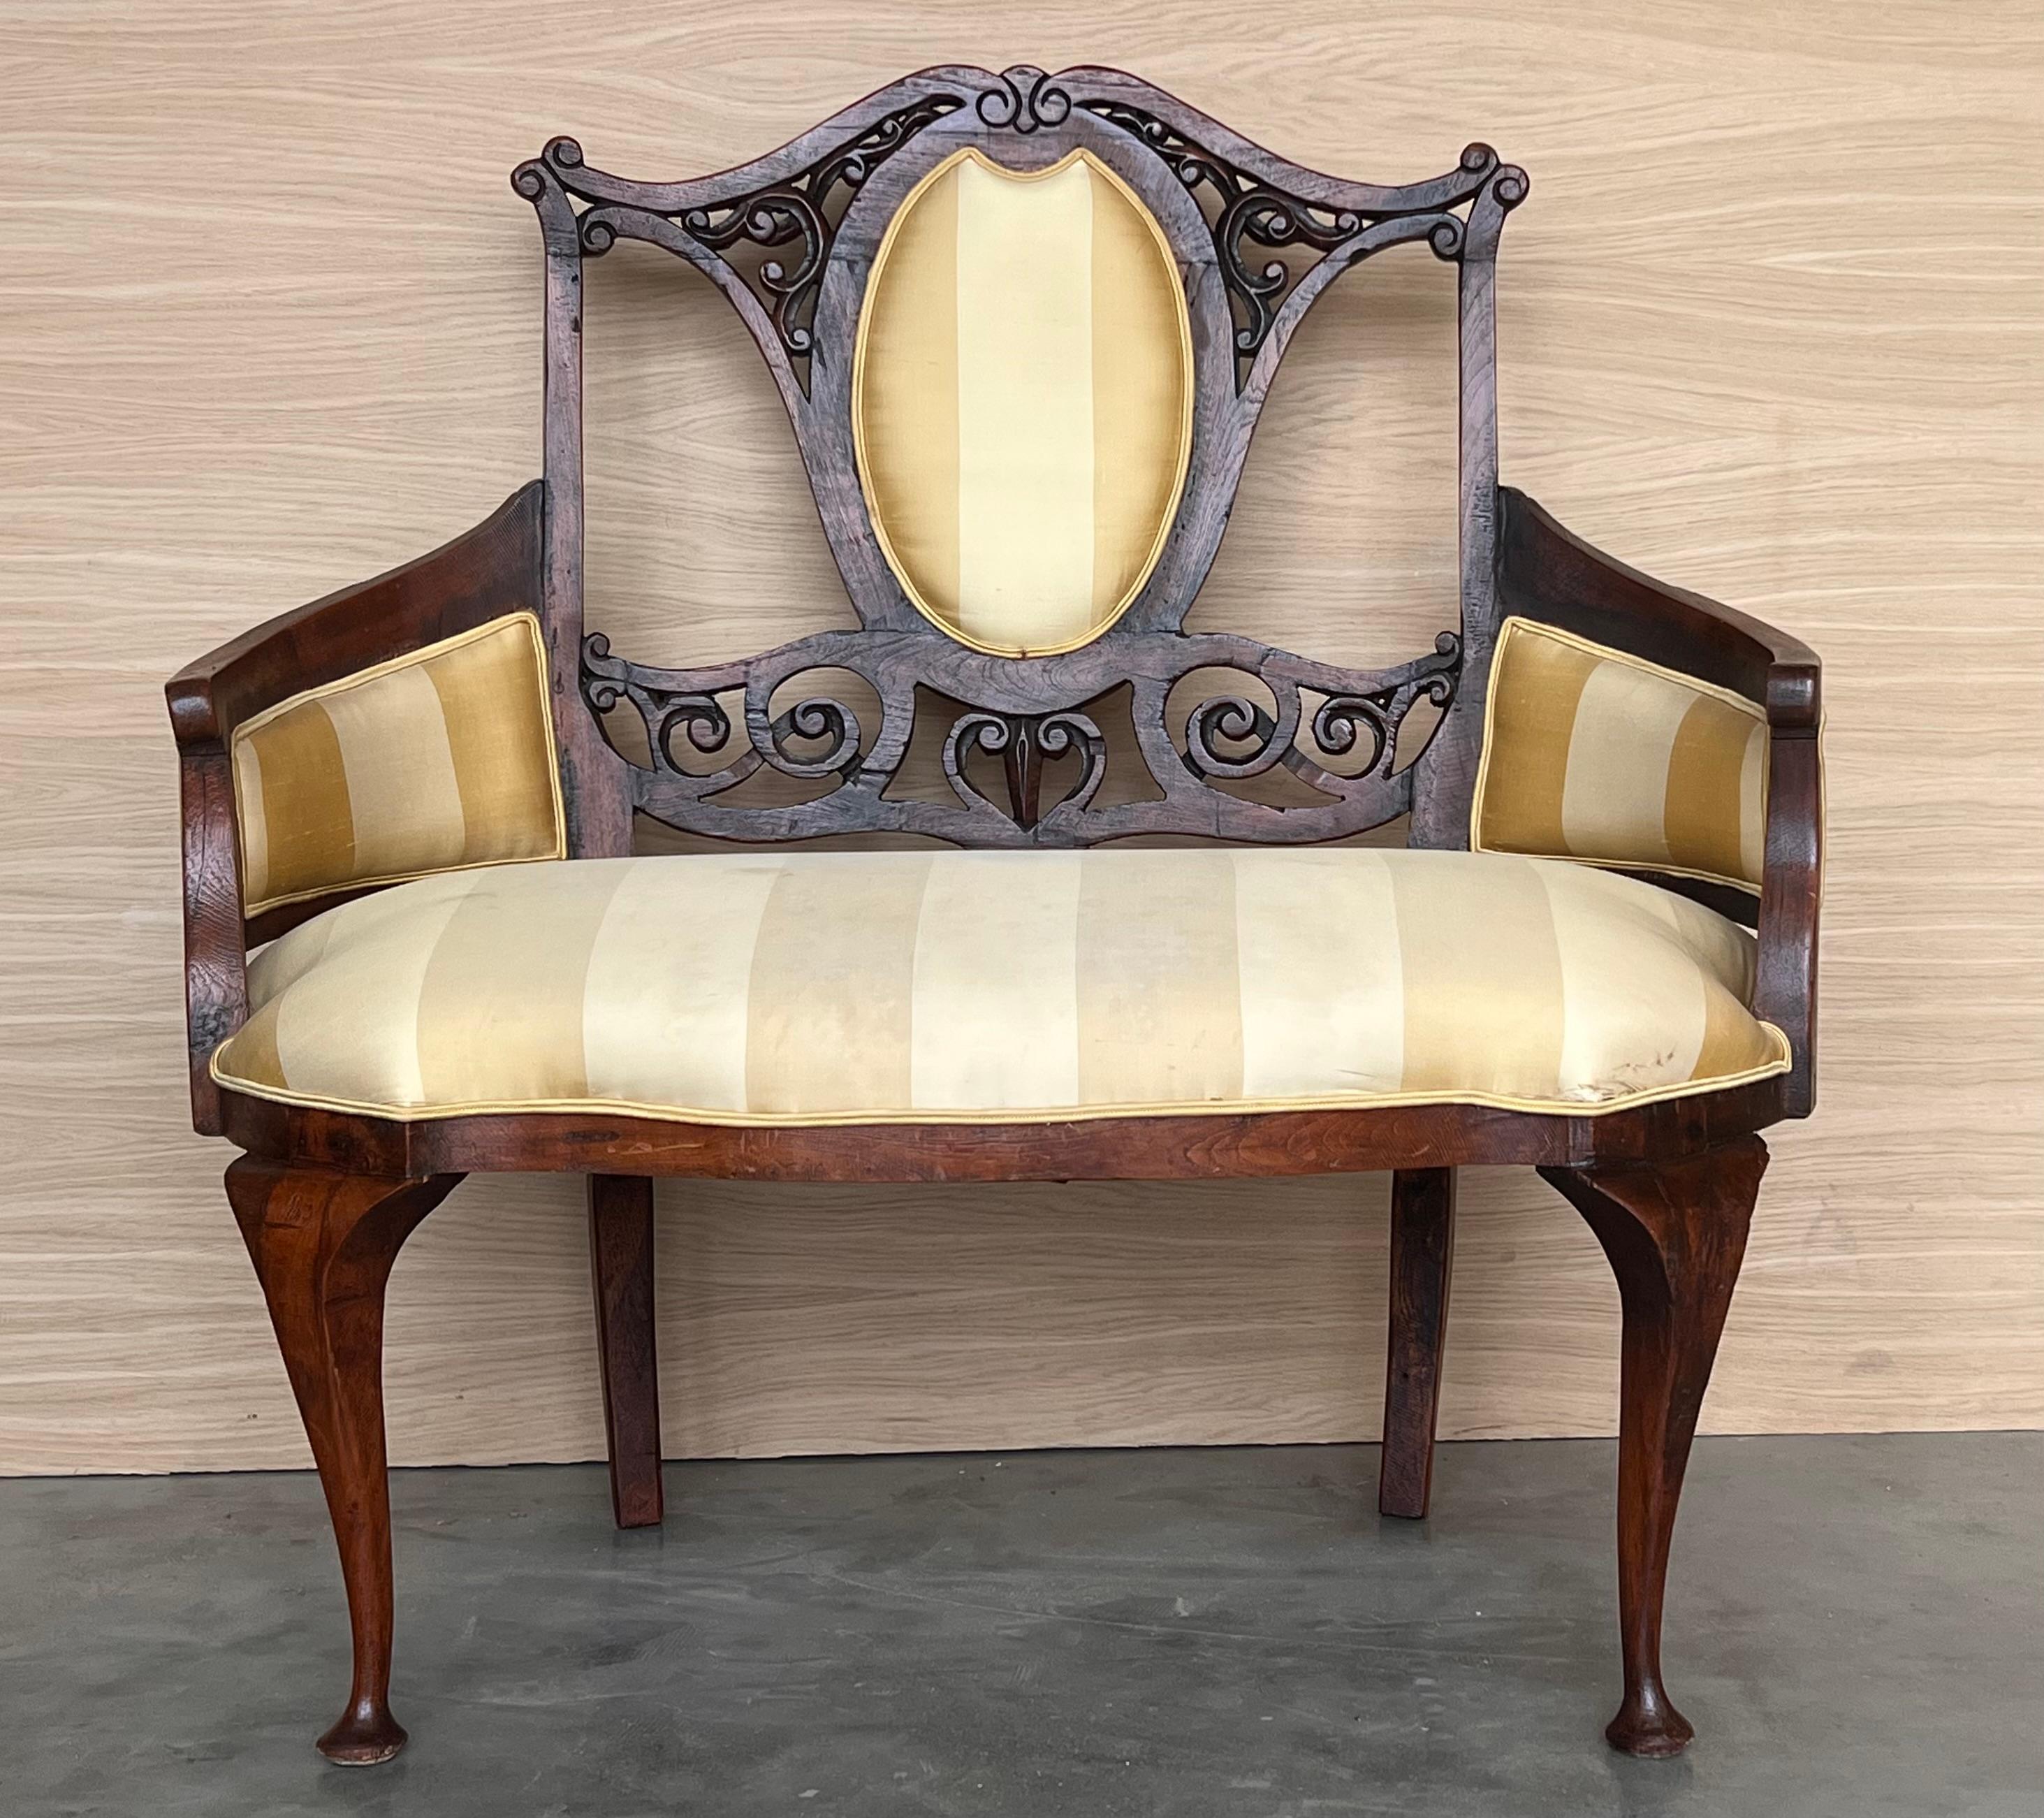 Unglaublicher Jugendstil  Preis für 2 Sofa-Sessel  
MATERIAL: Holz, neu gepolstert mit Federn und Gummiband (wie in den alten Tagen) Wenn Sie Fragen haben, stehen wir Ihnen gerne zur Verfügung. 

Der Name 